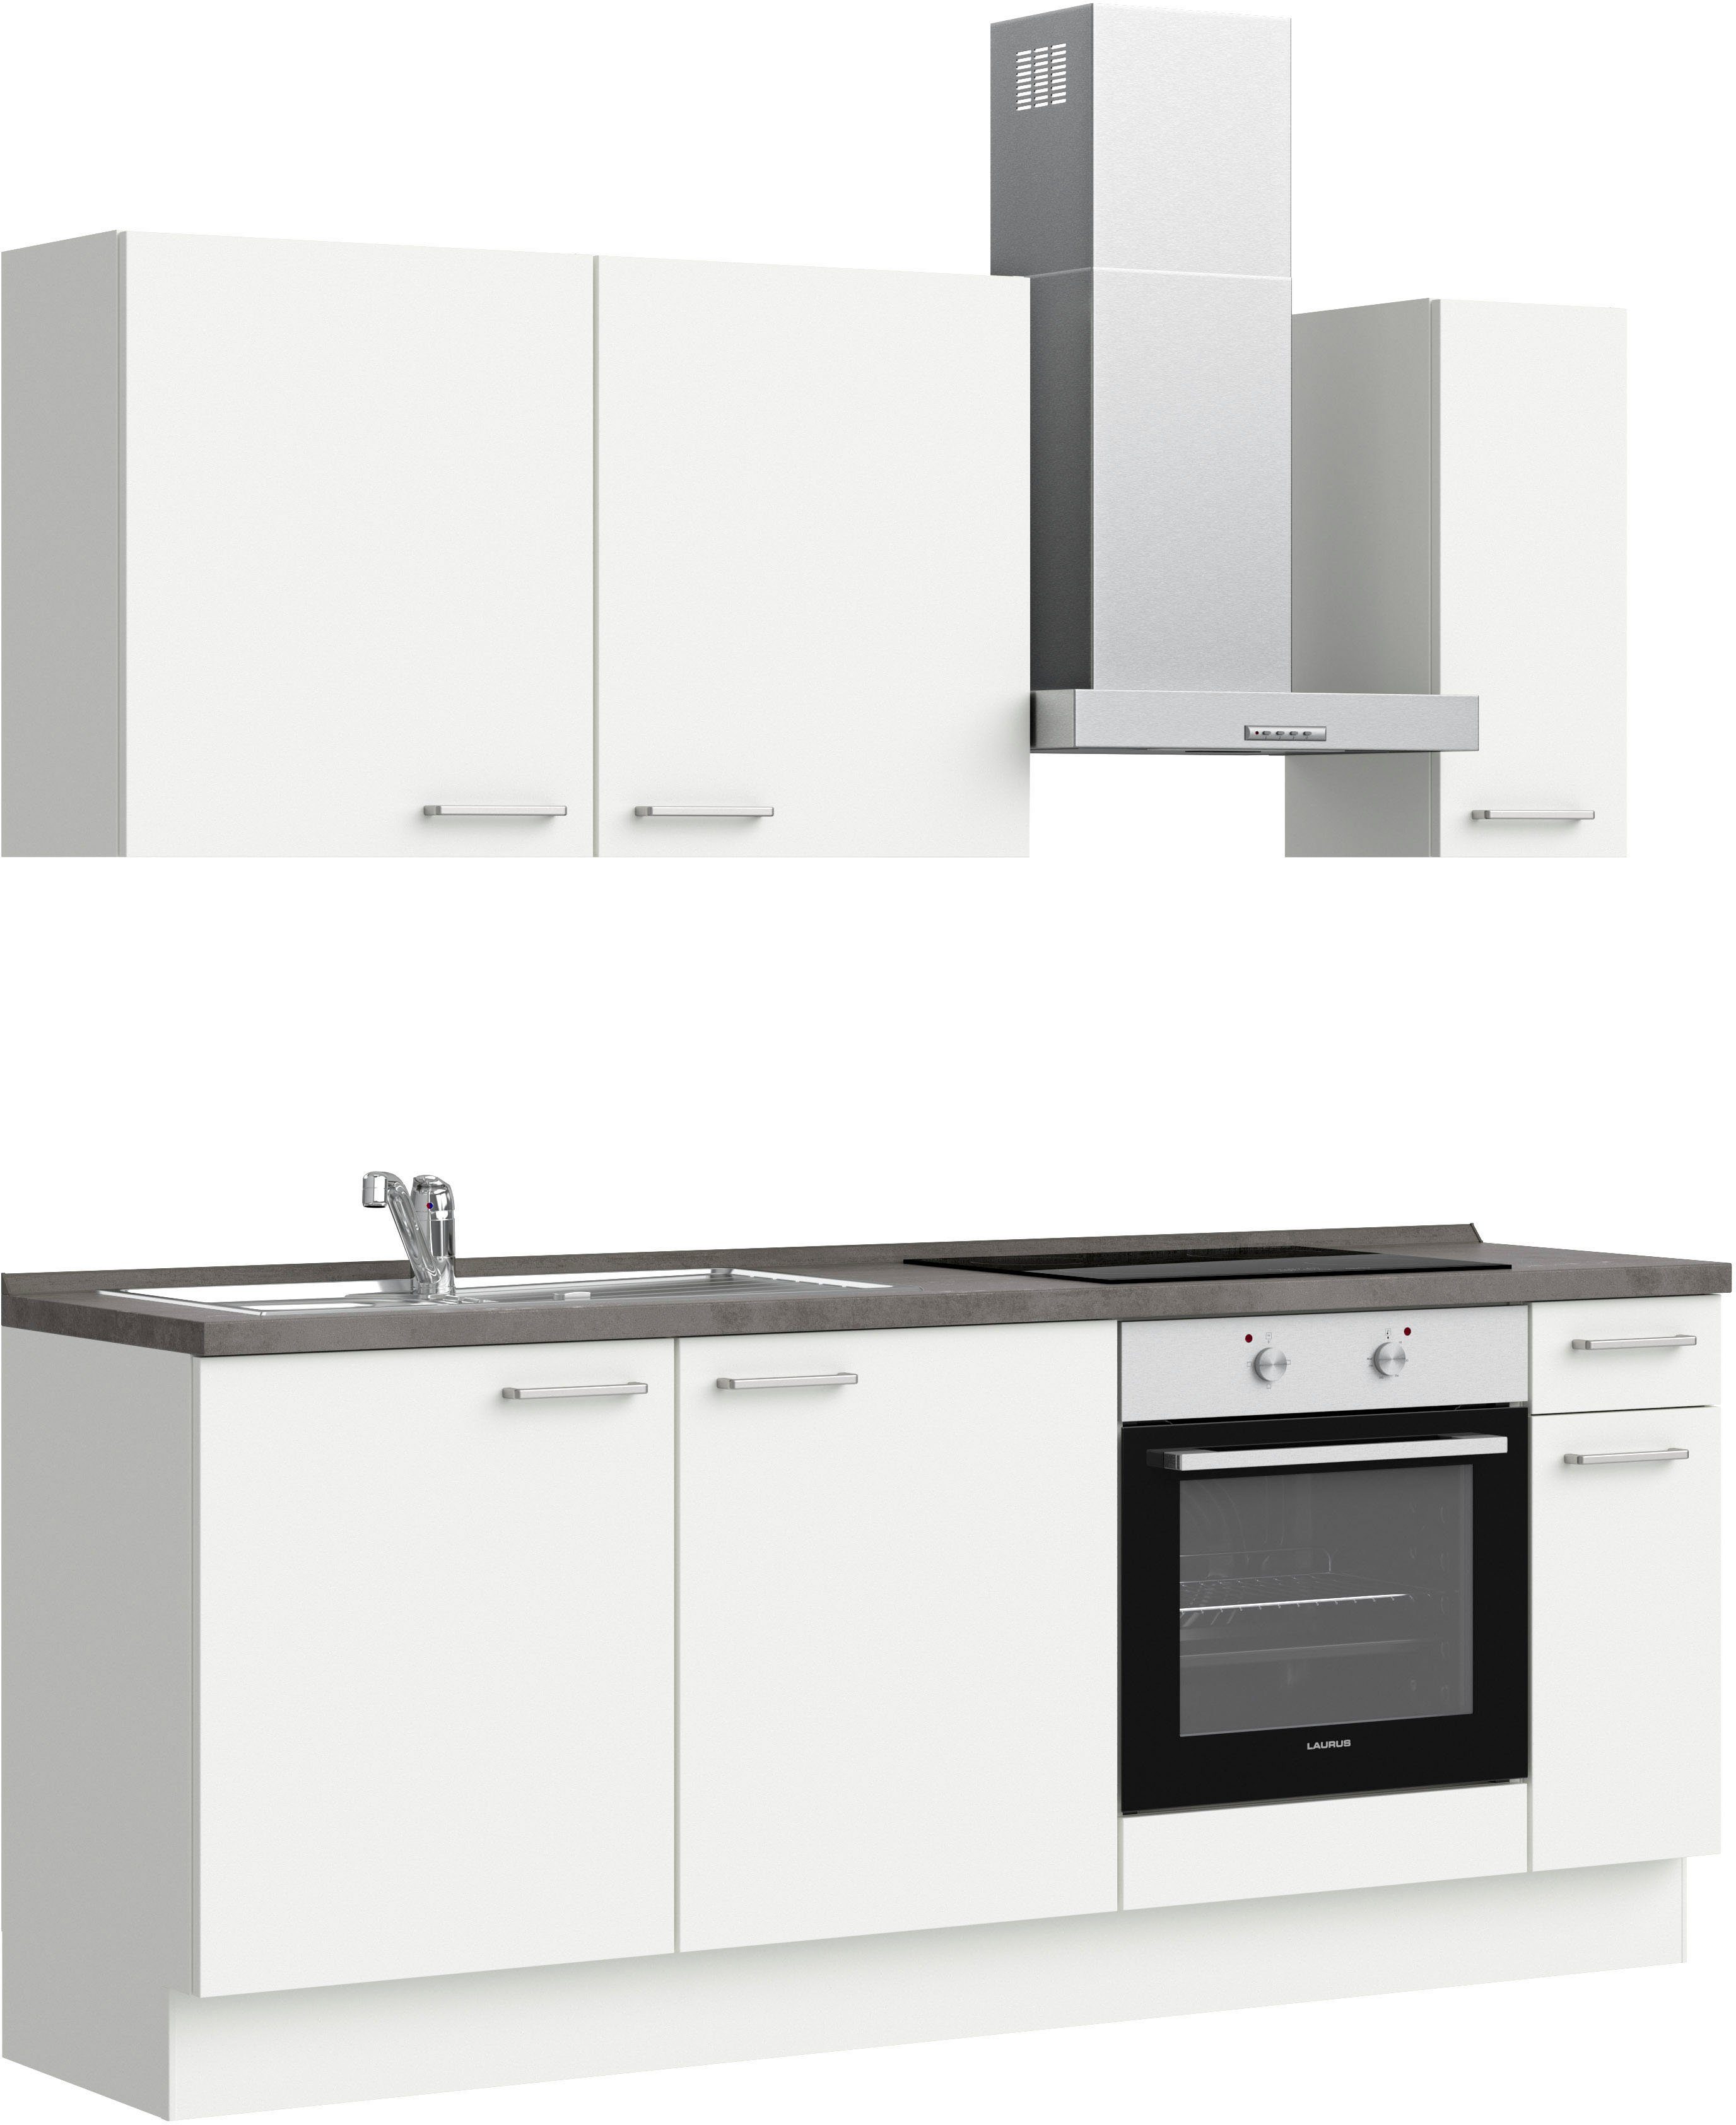 nobilia® elements Küche elements, vormontiert, Breite 210 cm, ohne E-Geräte grau|weiß